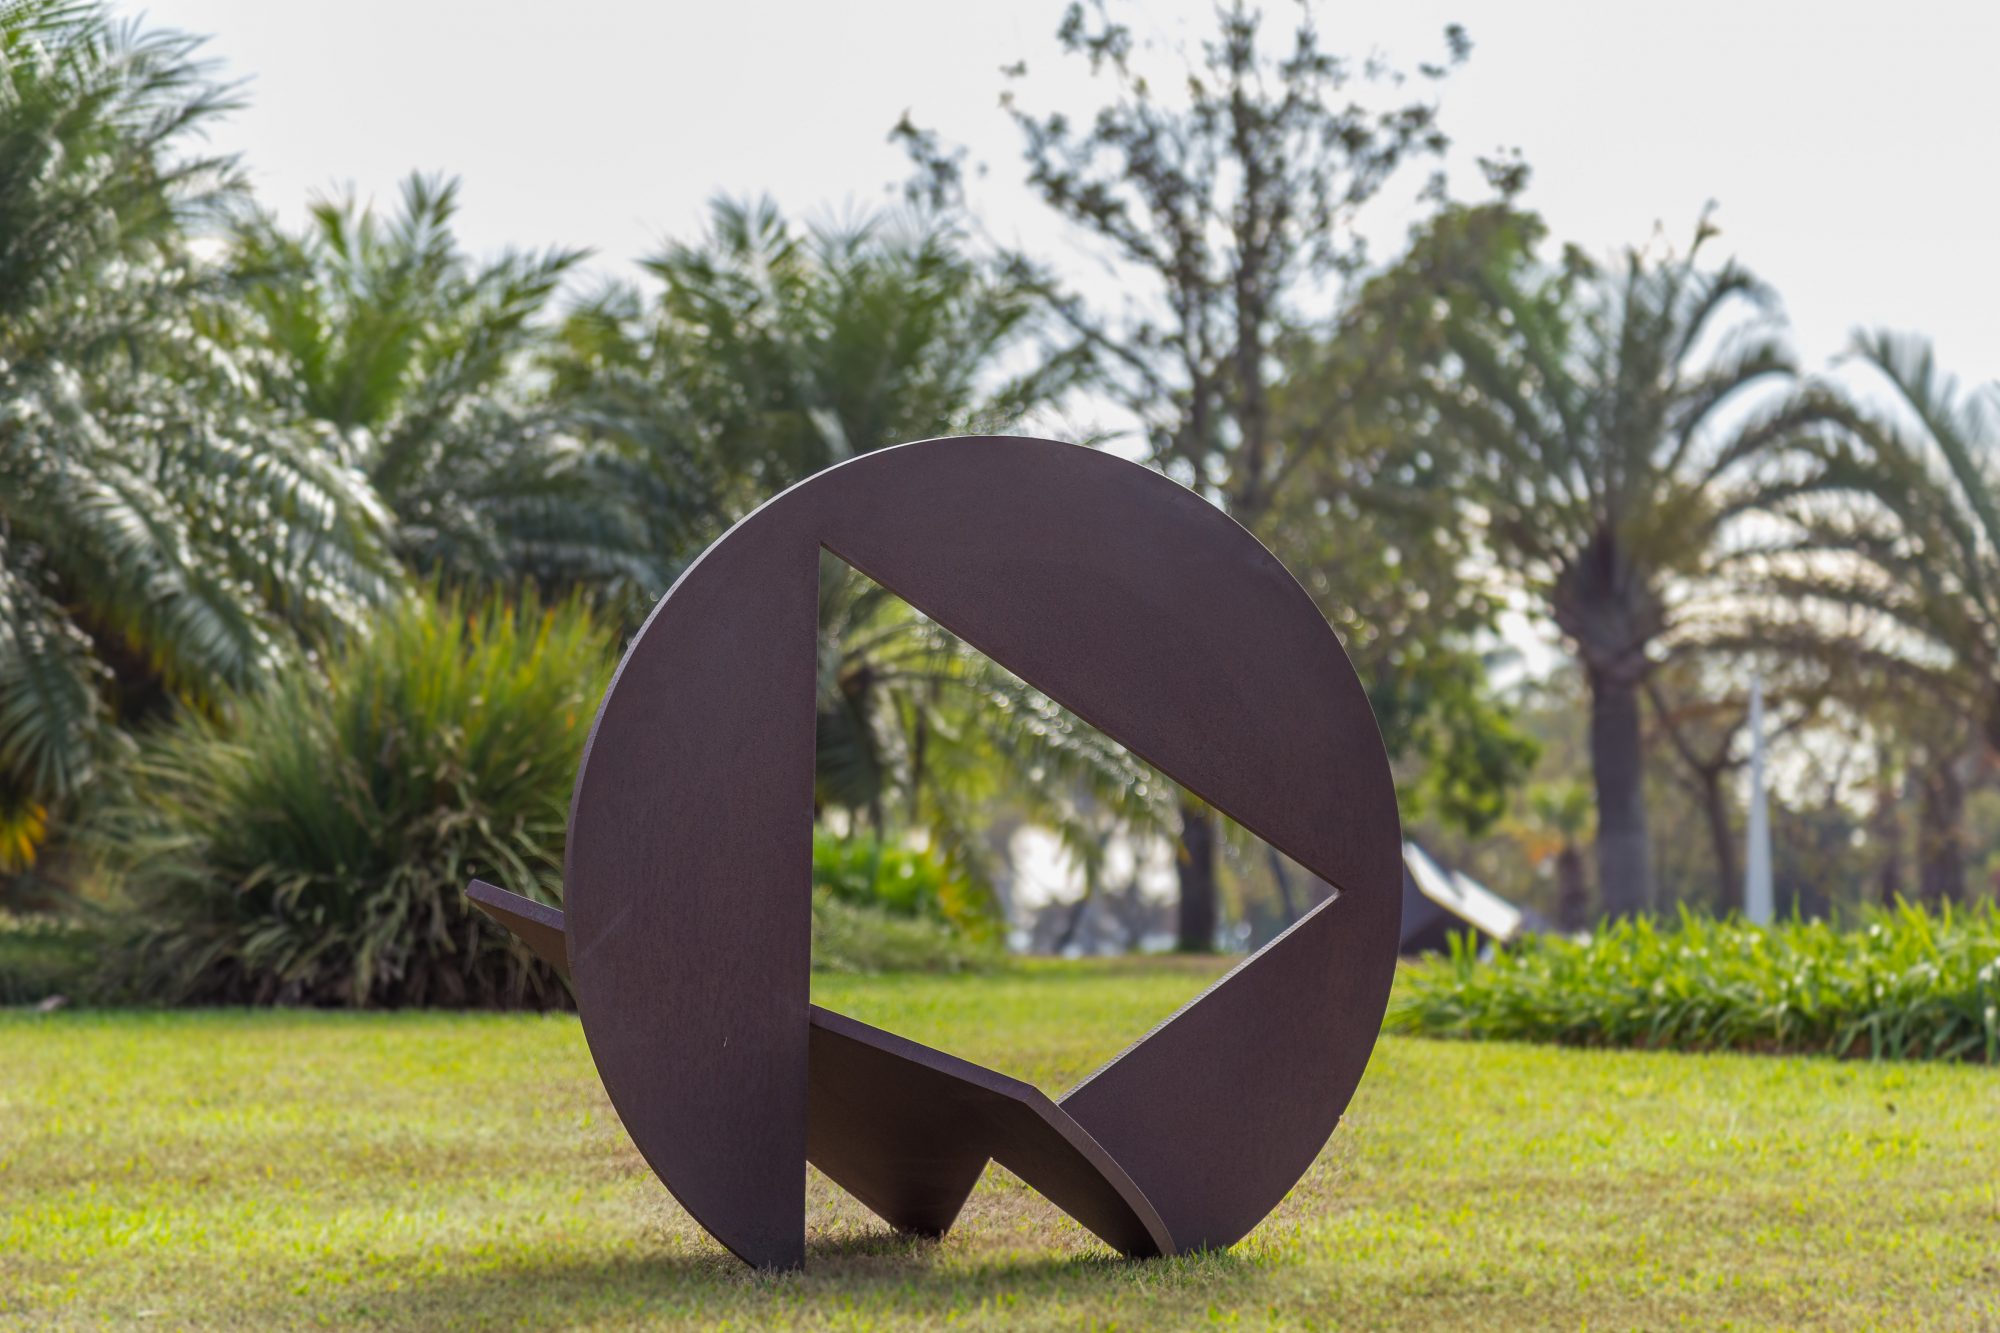 Exposição “Novos Rumos” reúne esculturas de grandes artistas a céu aberto.